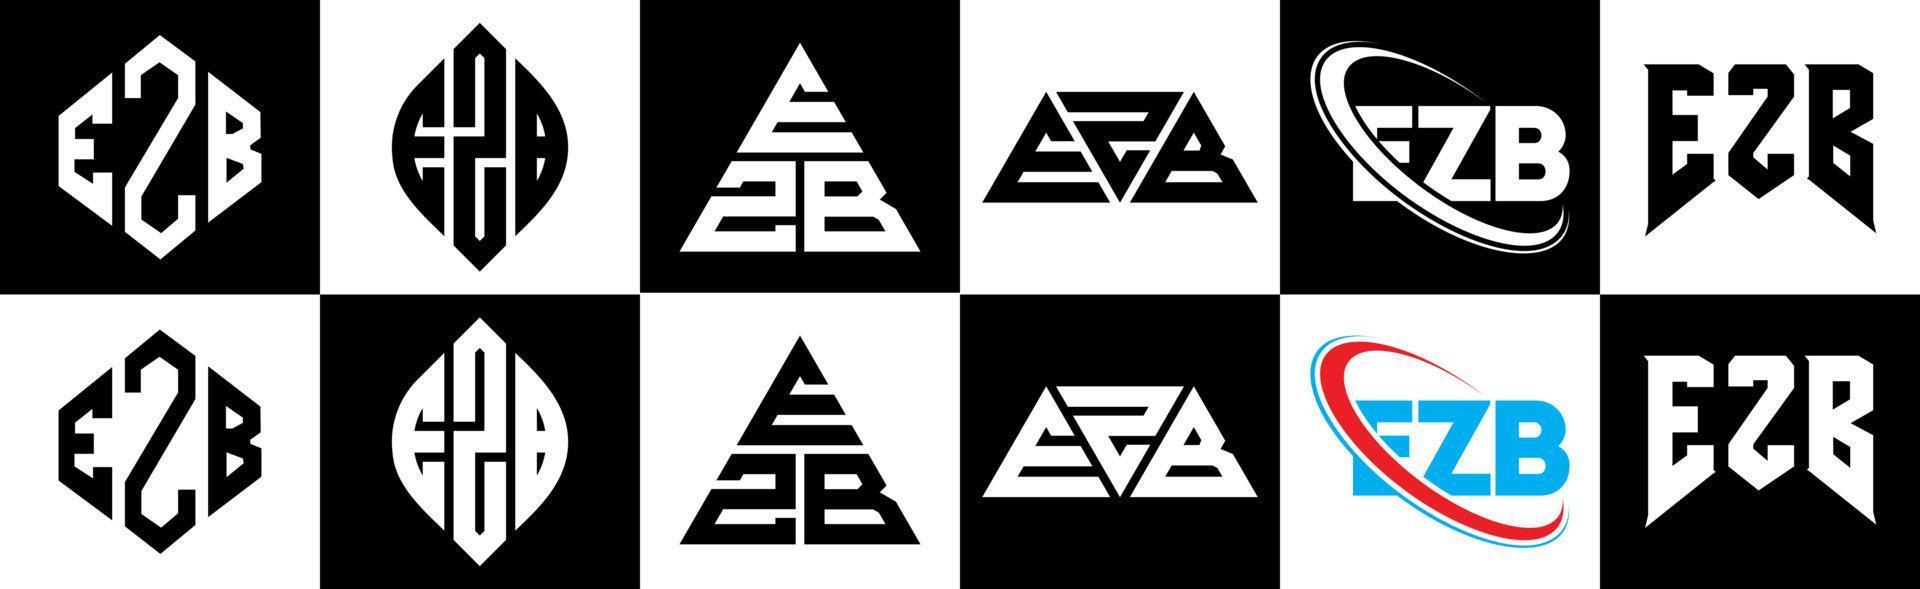 ezb-Buchstaben-Logo-Design in sechs Stilen. ezb polygon, kreis, dreieck, hexagon, flacher und einfacher stil mit schwarz-weißem buchstabenlogo in einer zeichenfläche. ezb minimalistisches und klassisches Logo vektor